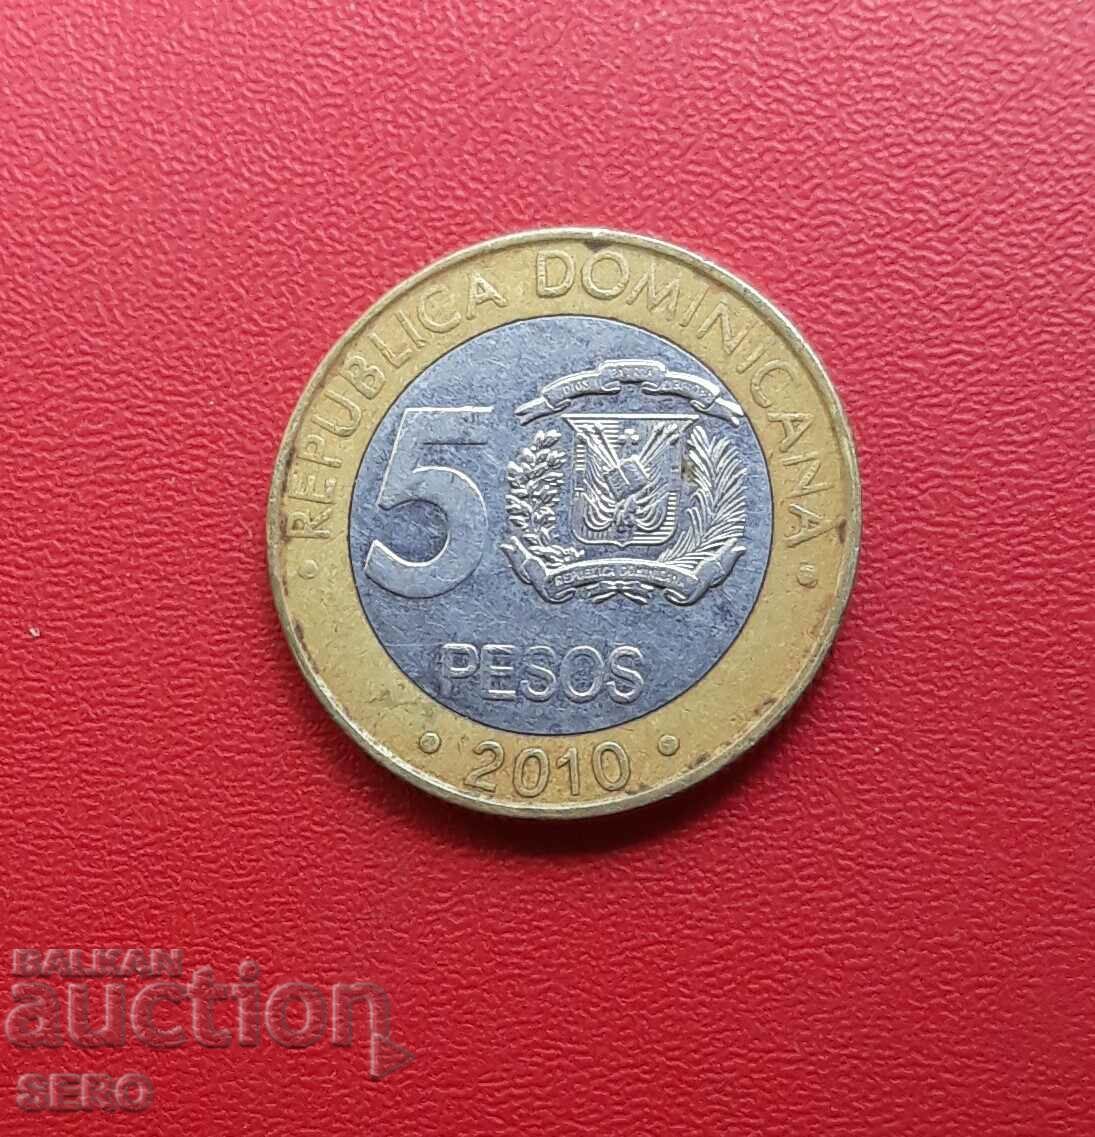 Republica Dominicană - 5 pesos 2010